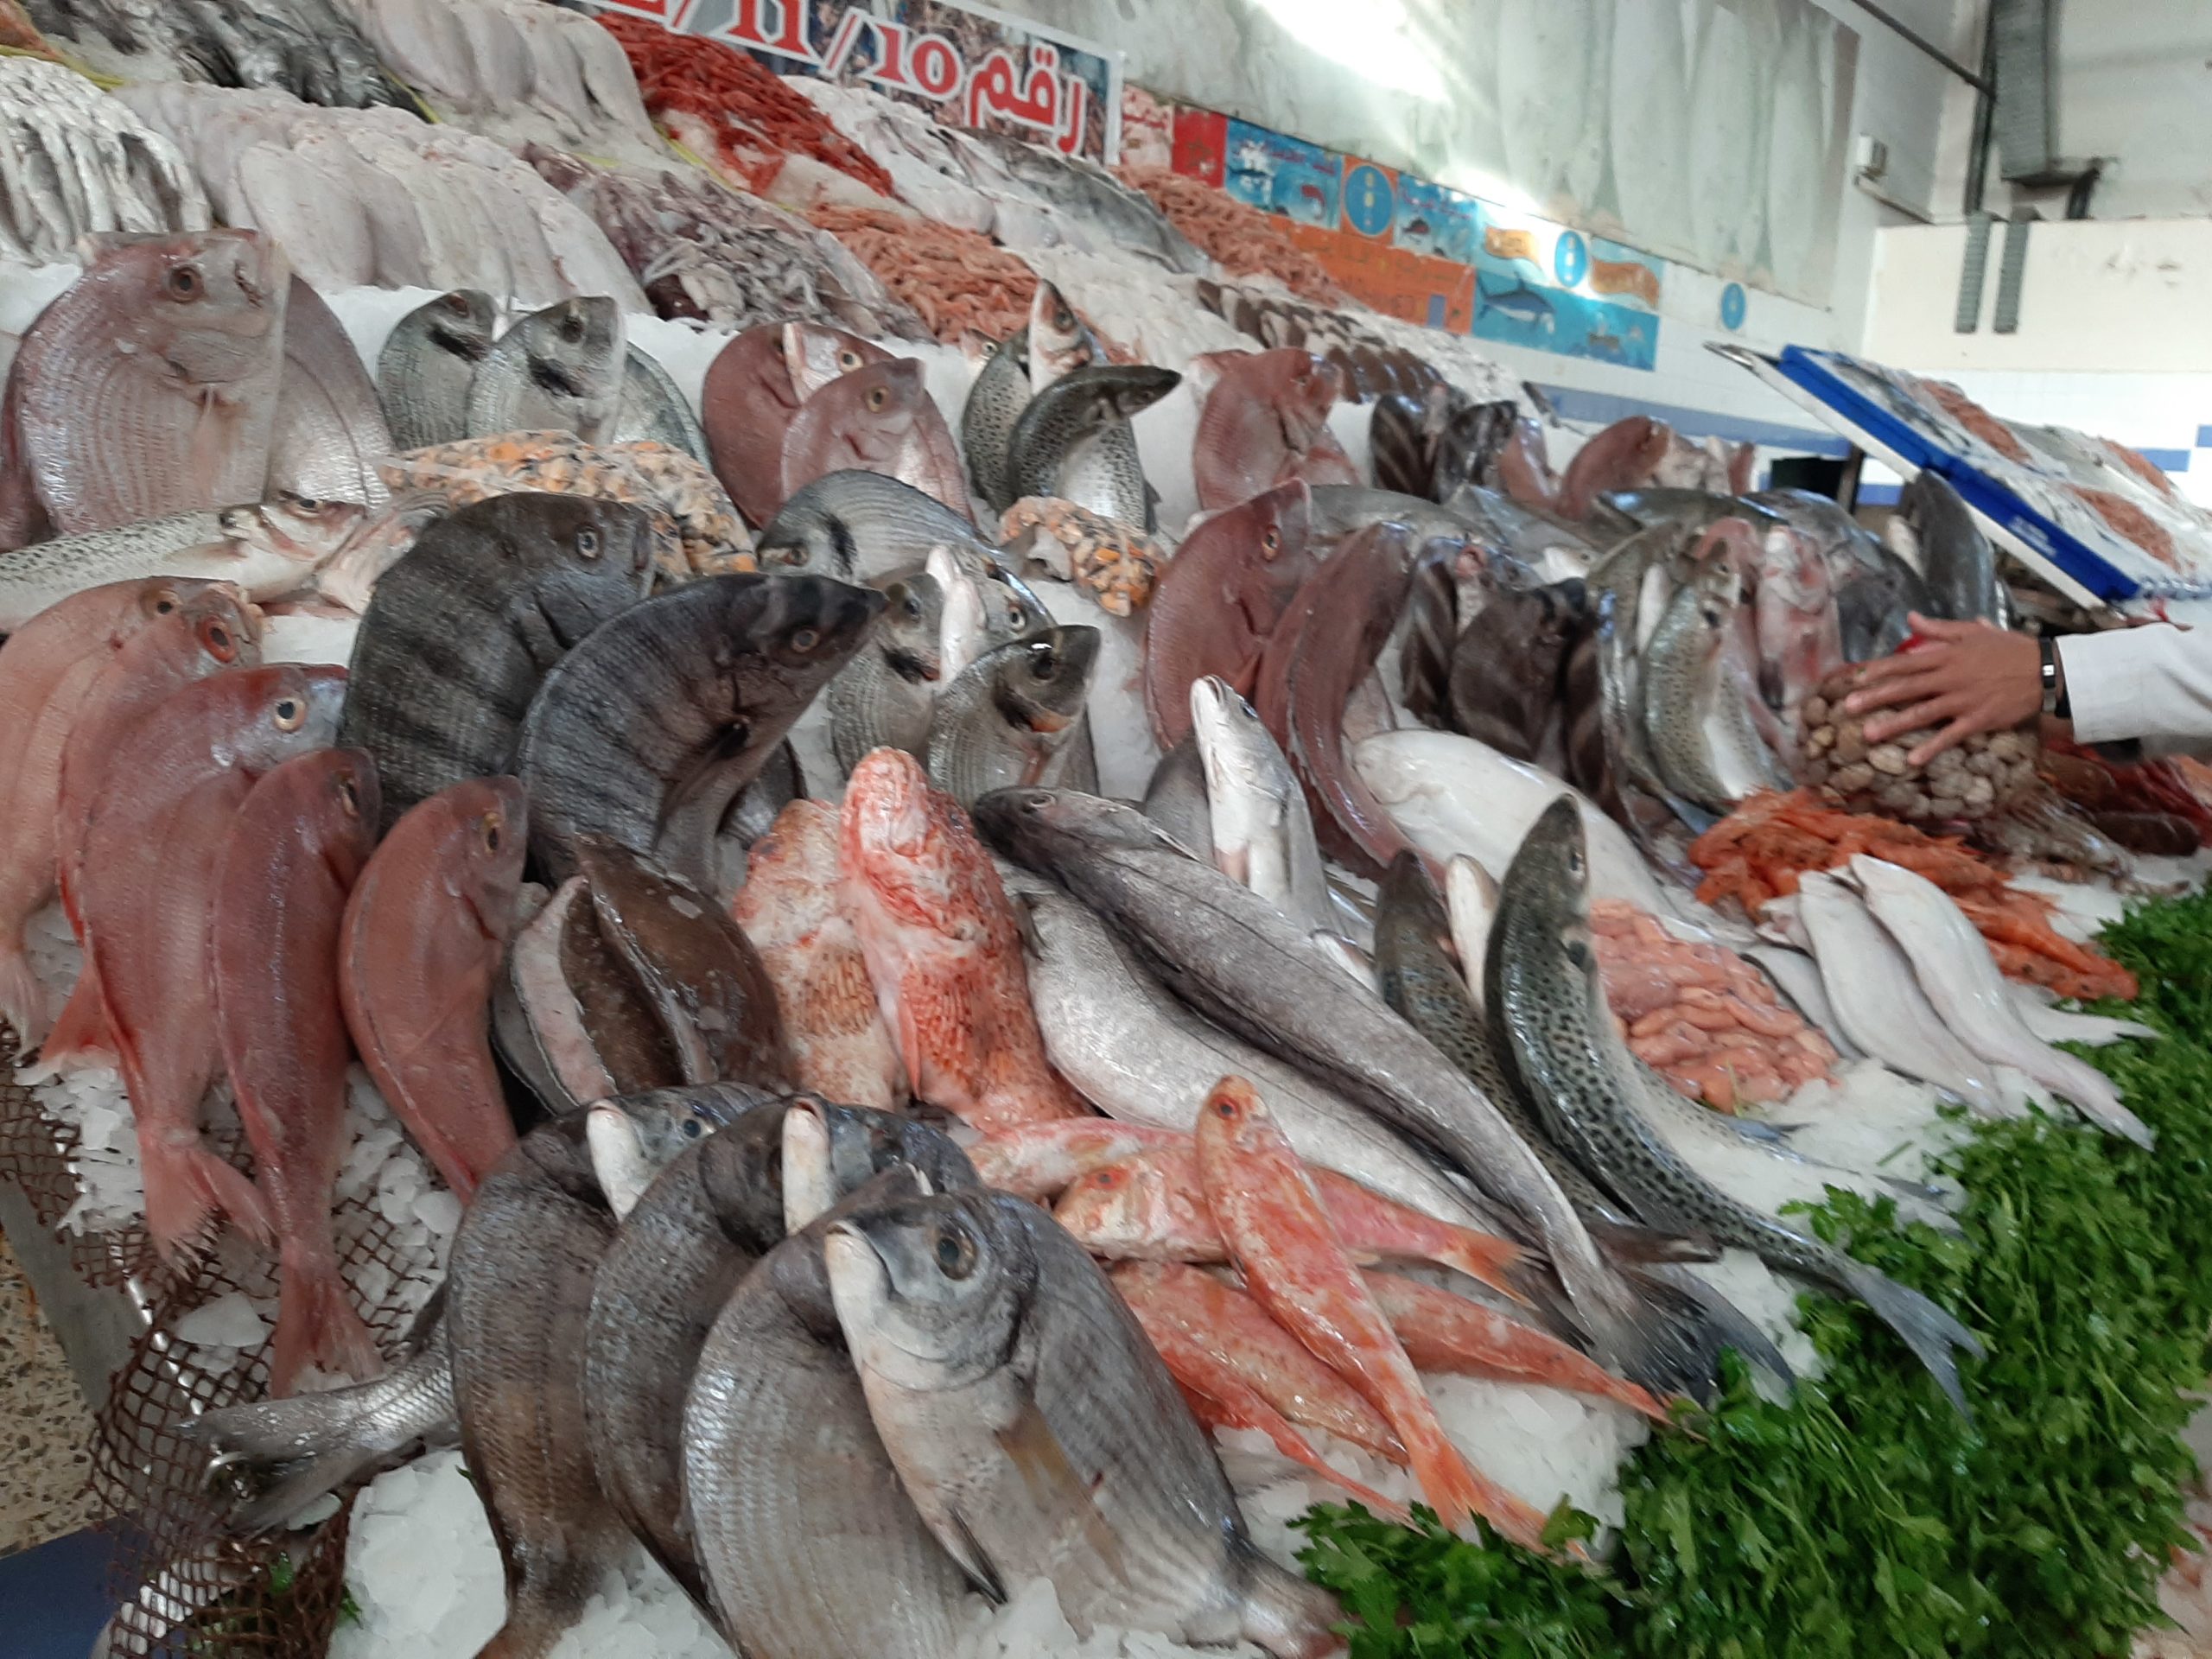 البلطي بـ80 جنيهًا.. لماذا ارتفعت أسعار الأسماك في الأسواق؟